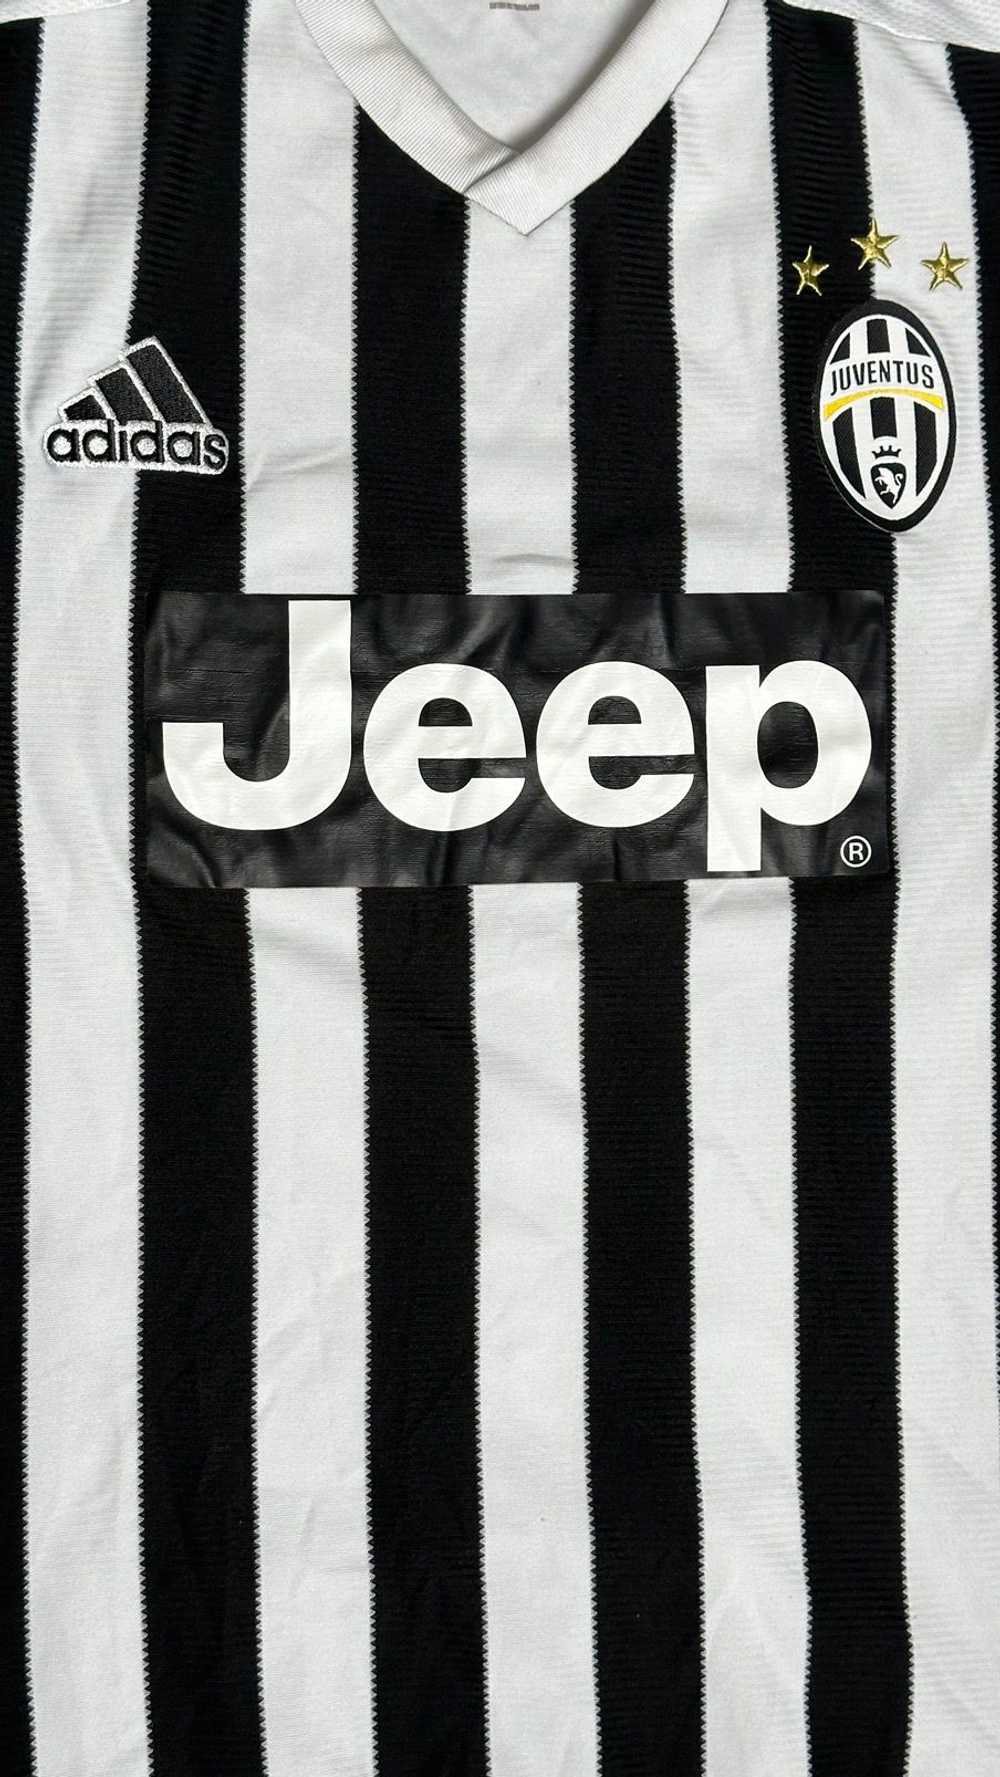 Adidas × Soccer Jersey Juventus 2015 - 2016 Home … - image 4